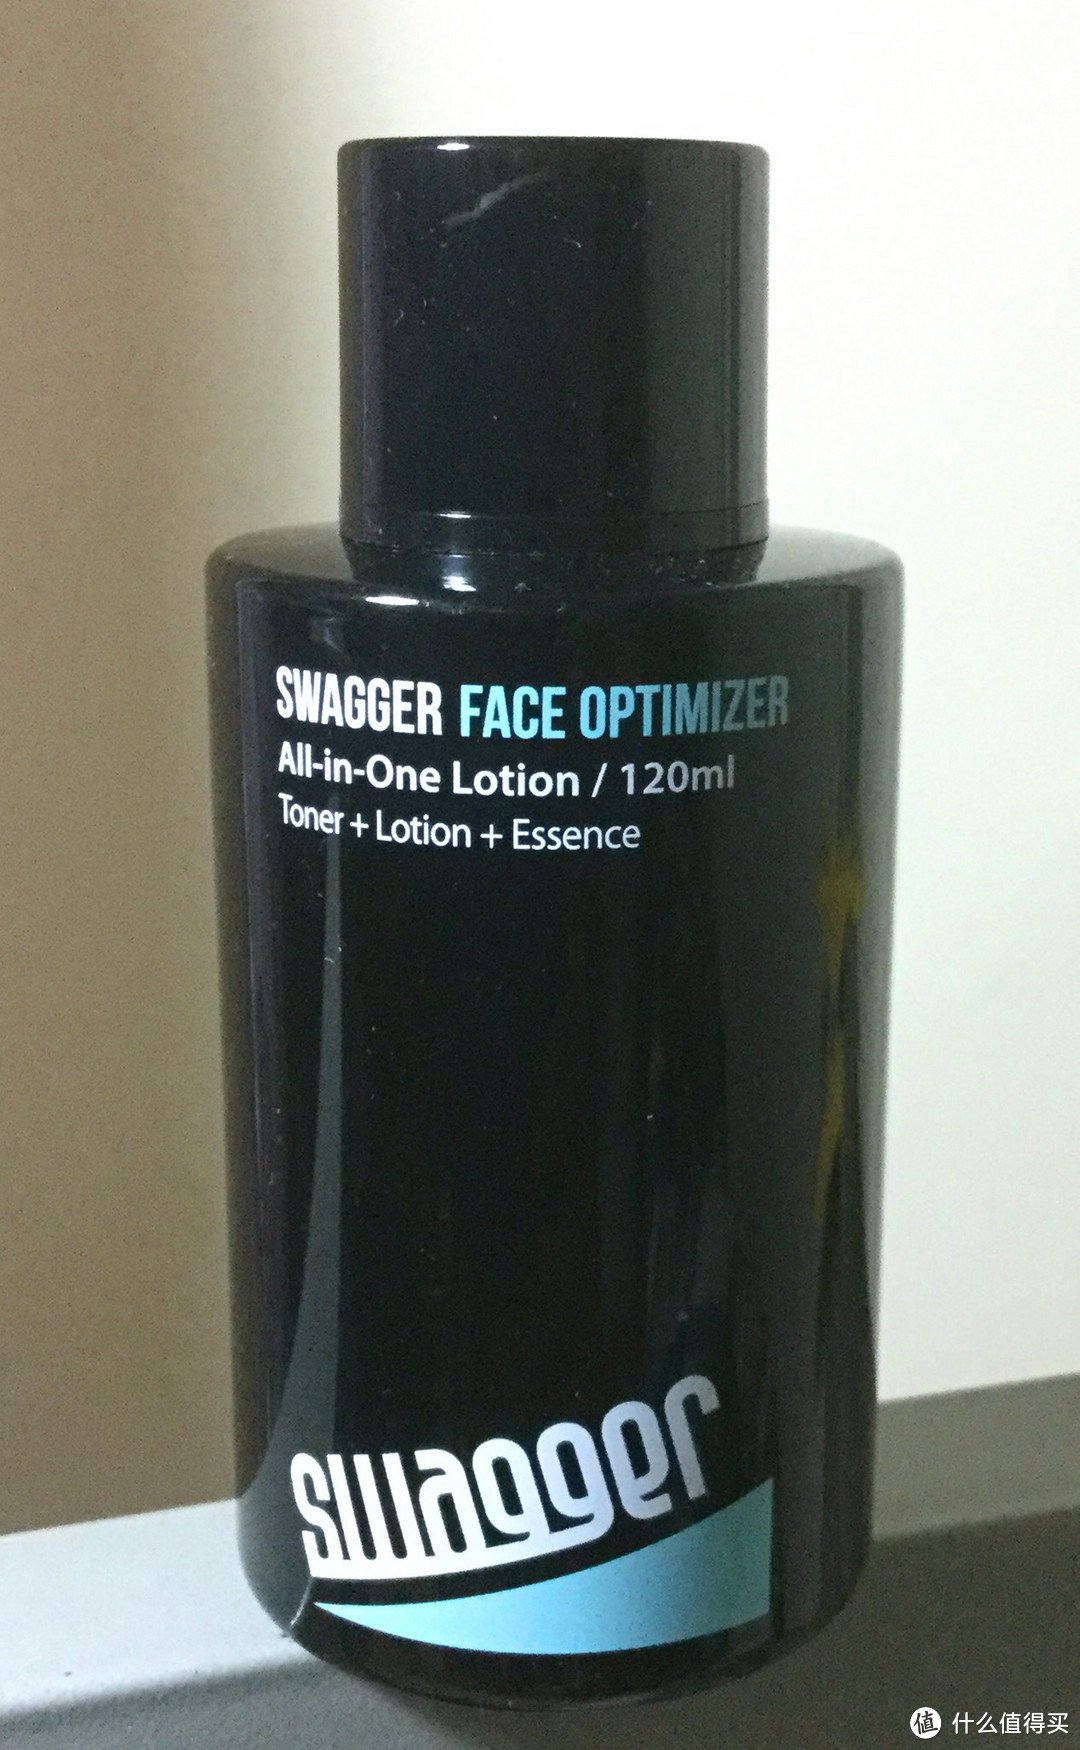 男人的脸也值得呵护——施雅格 Swagger 男士面部护理套装 体验评测